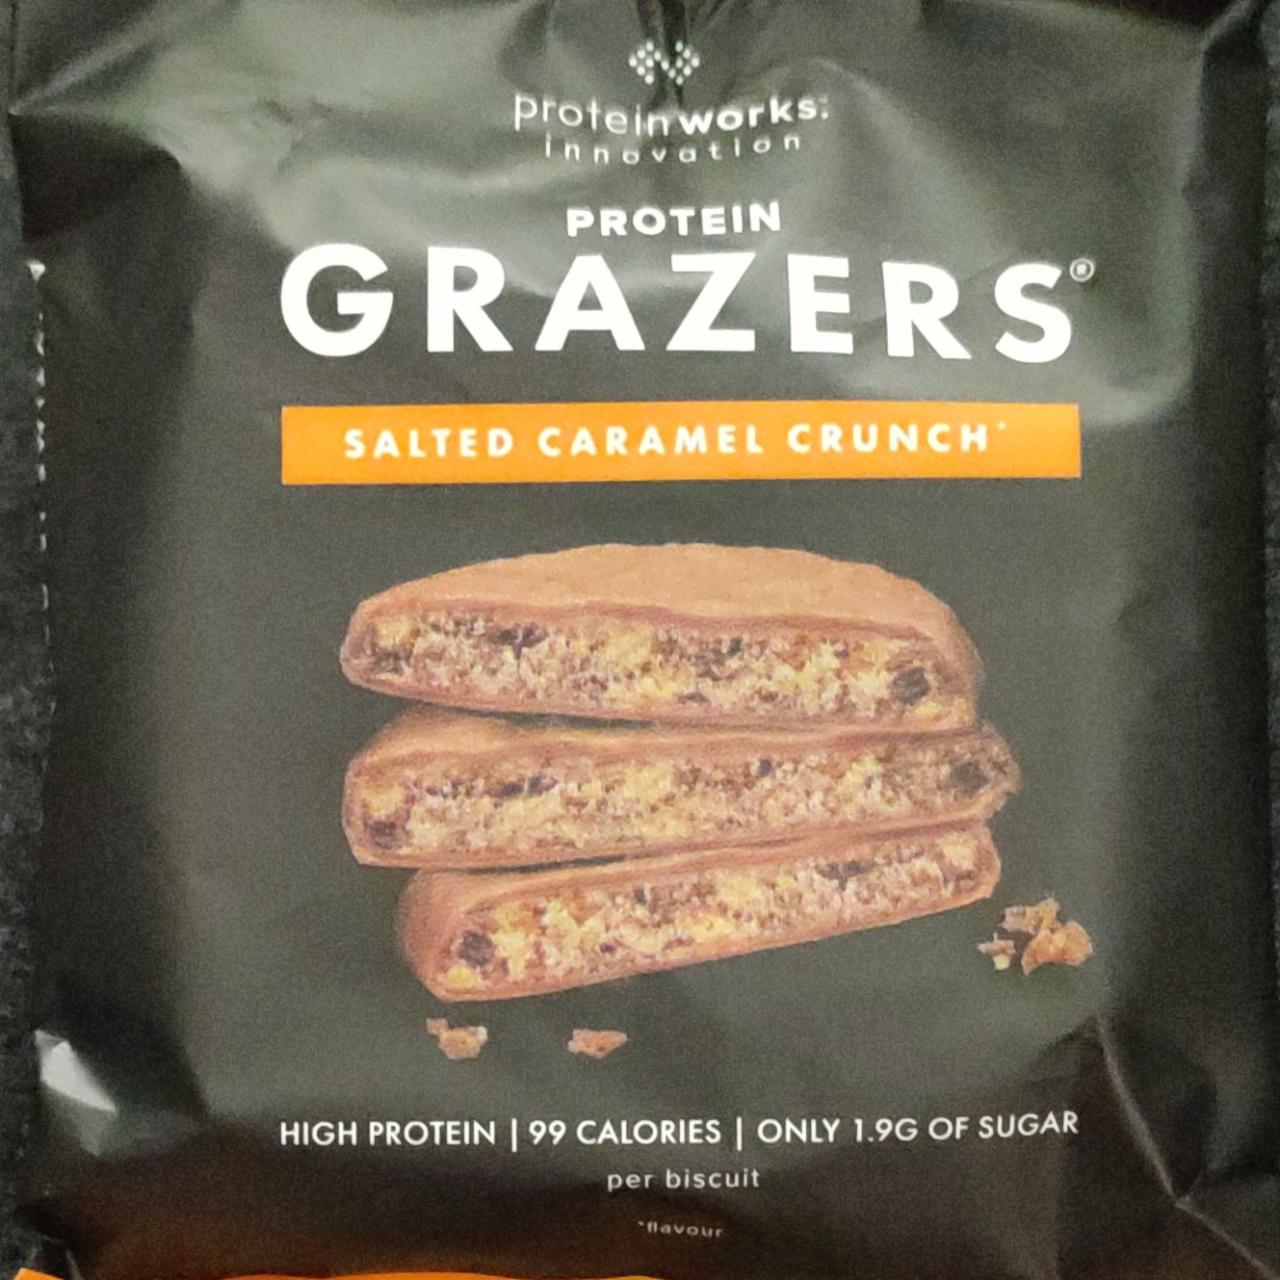 Fotografie - Protein Grazers Salted caramel crunch Protein works innovation